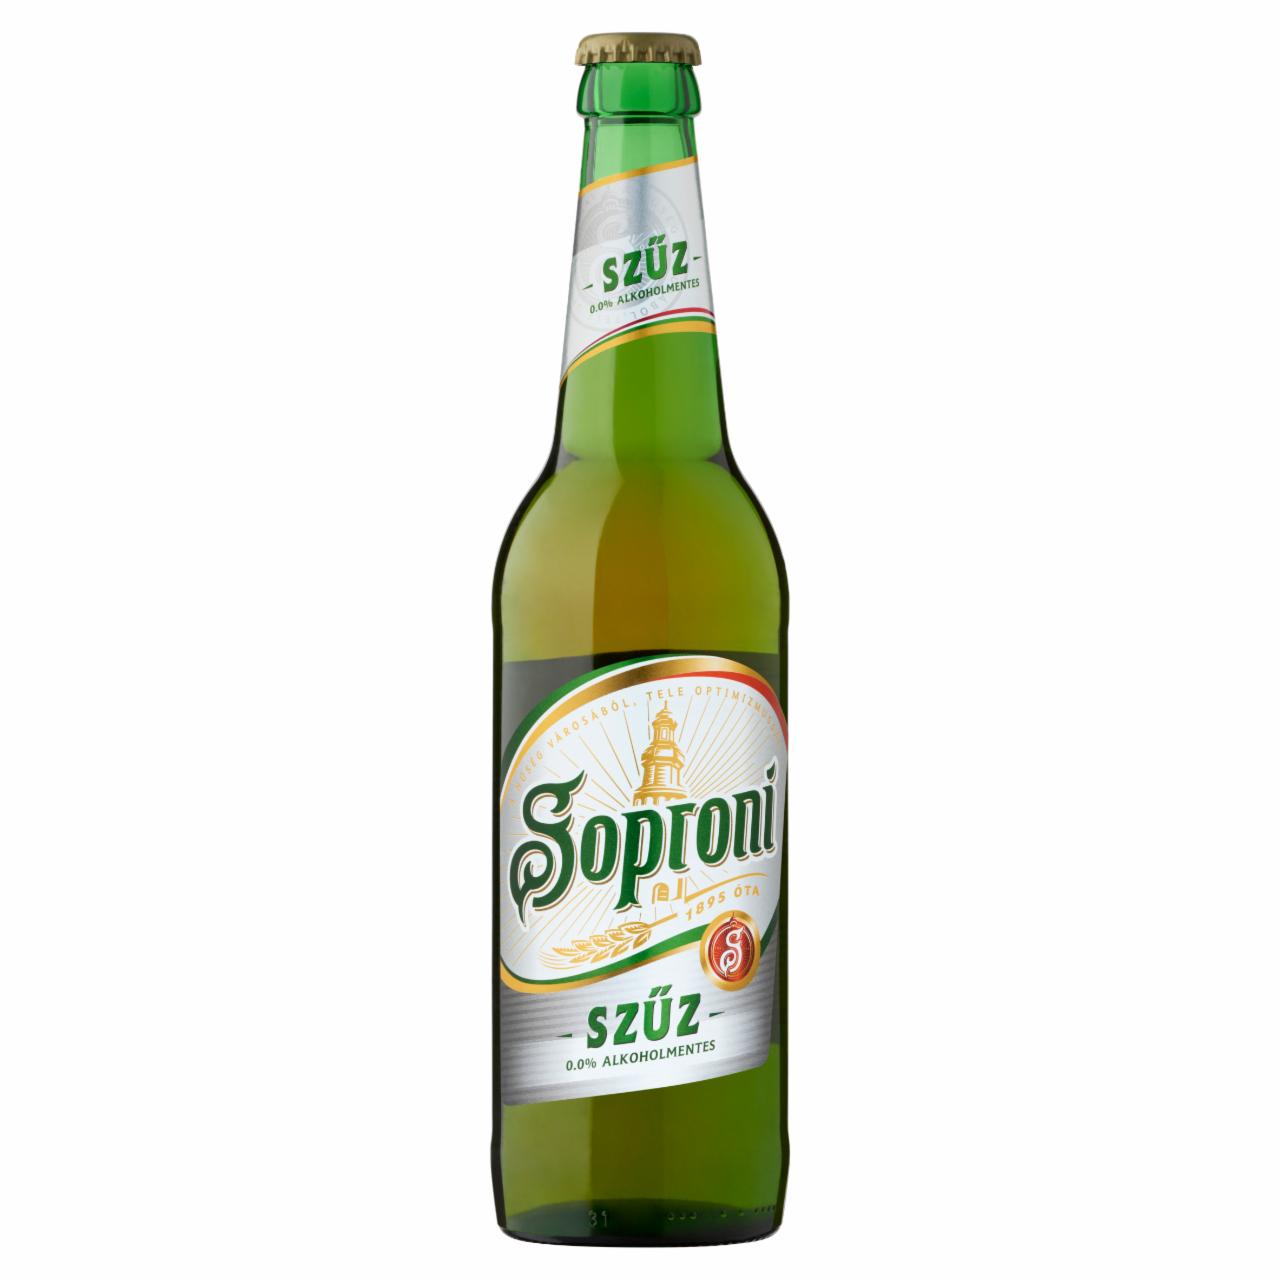 Képek - Soproni Szűz alkoholmentes világos sör 0,5 l üveg